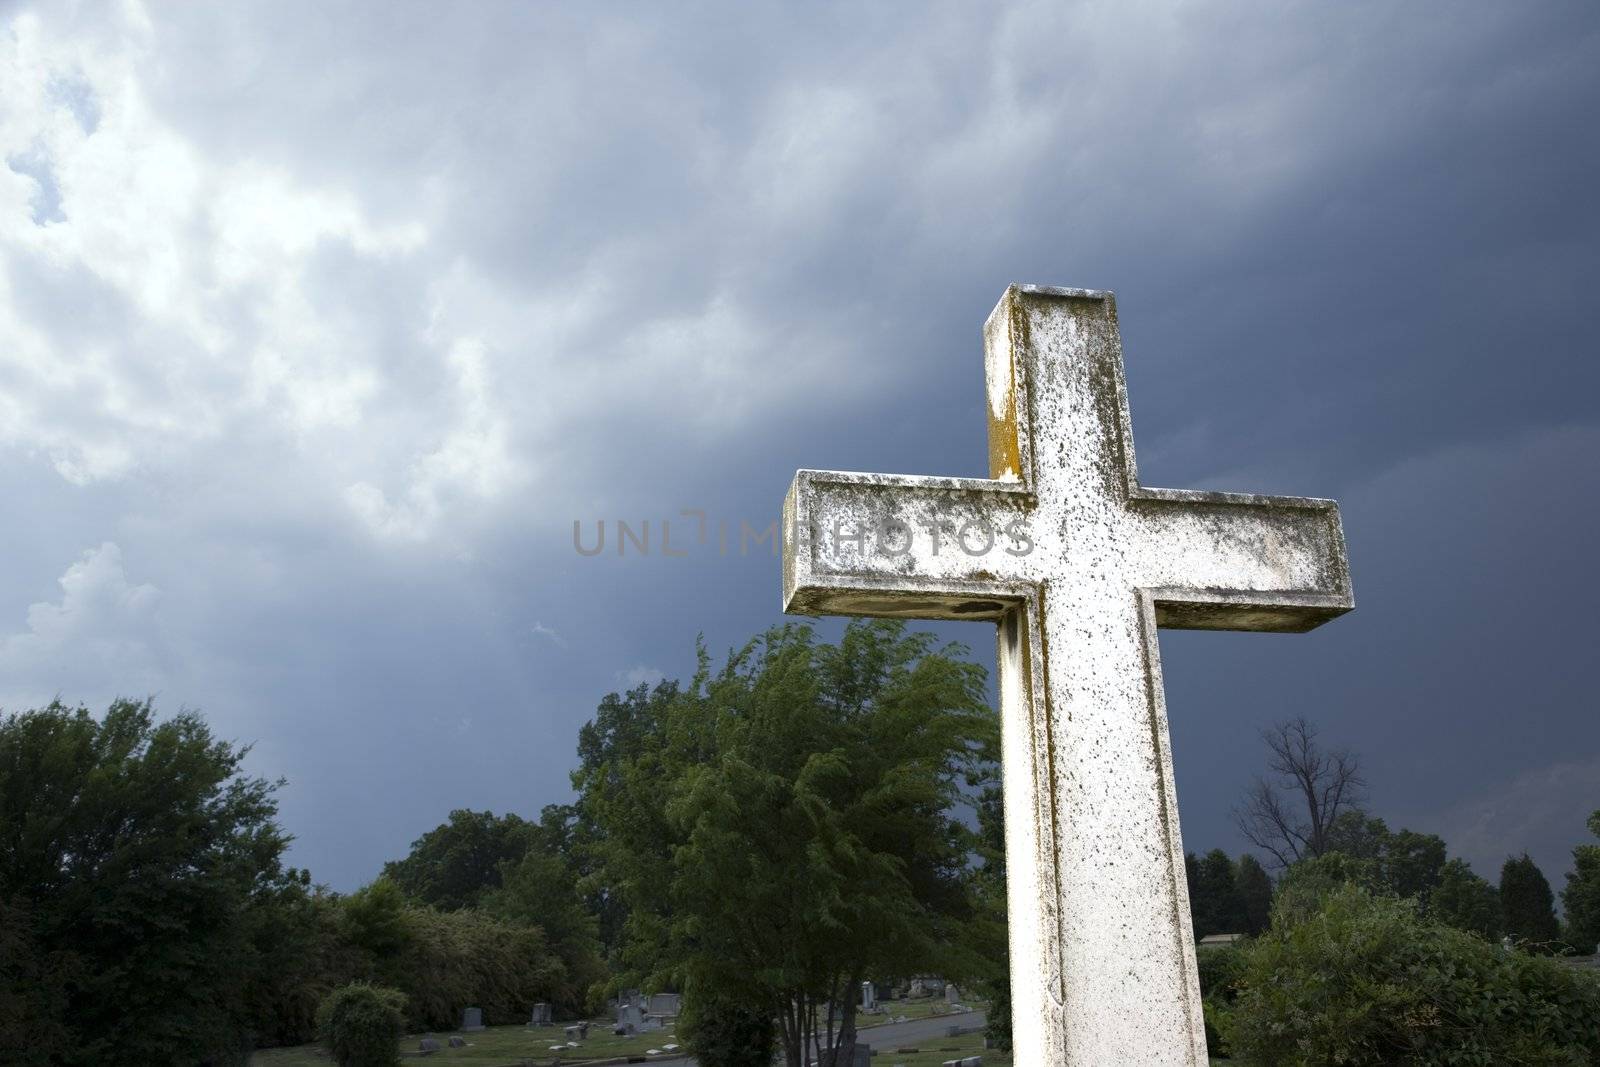 Cross in graveyard against stormy dark clouds in sky.